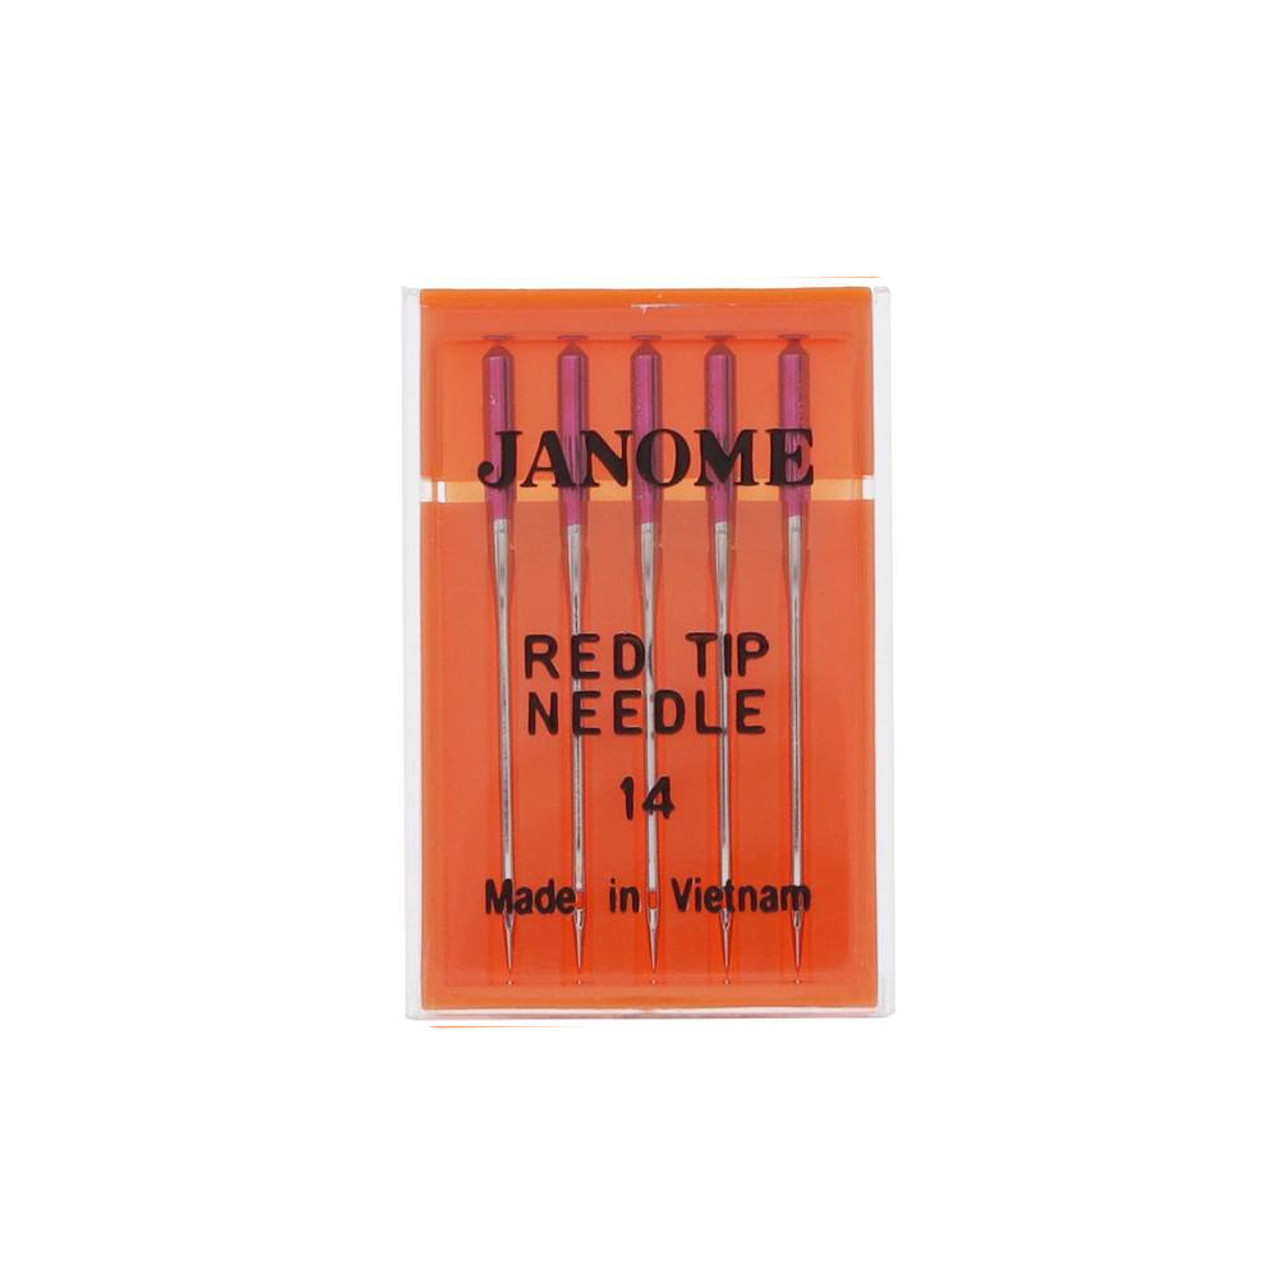 Janome Top Stitch Needles - Size 14